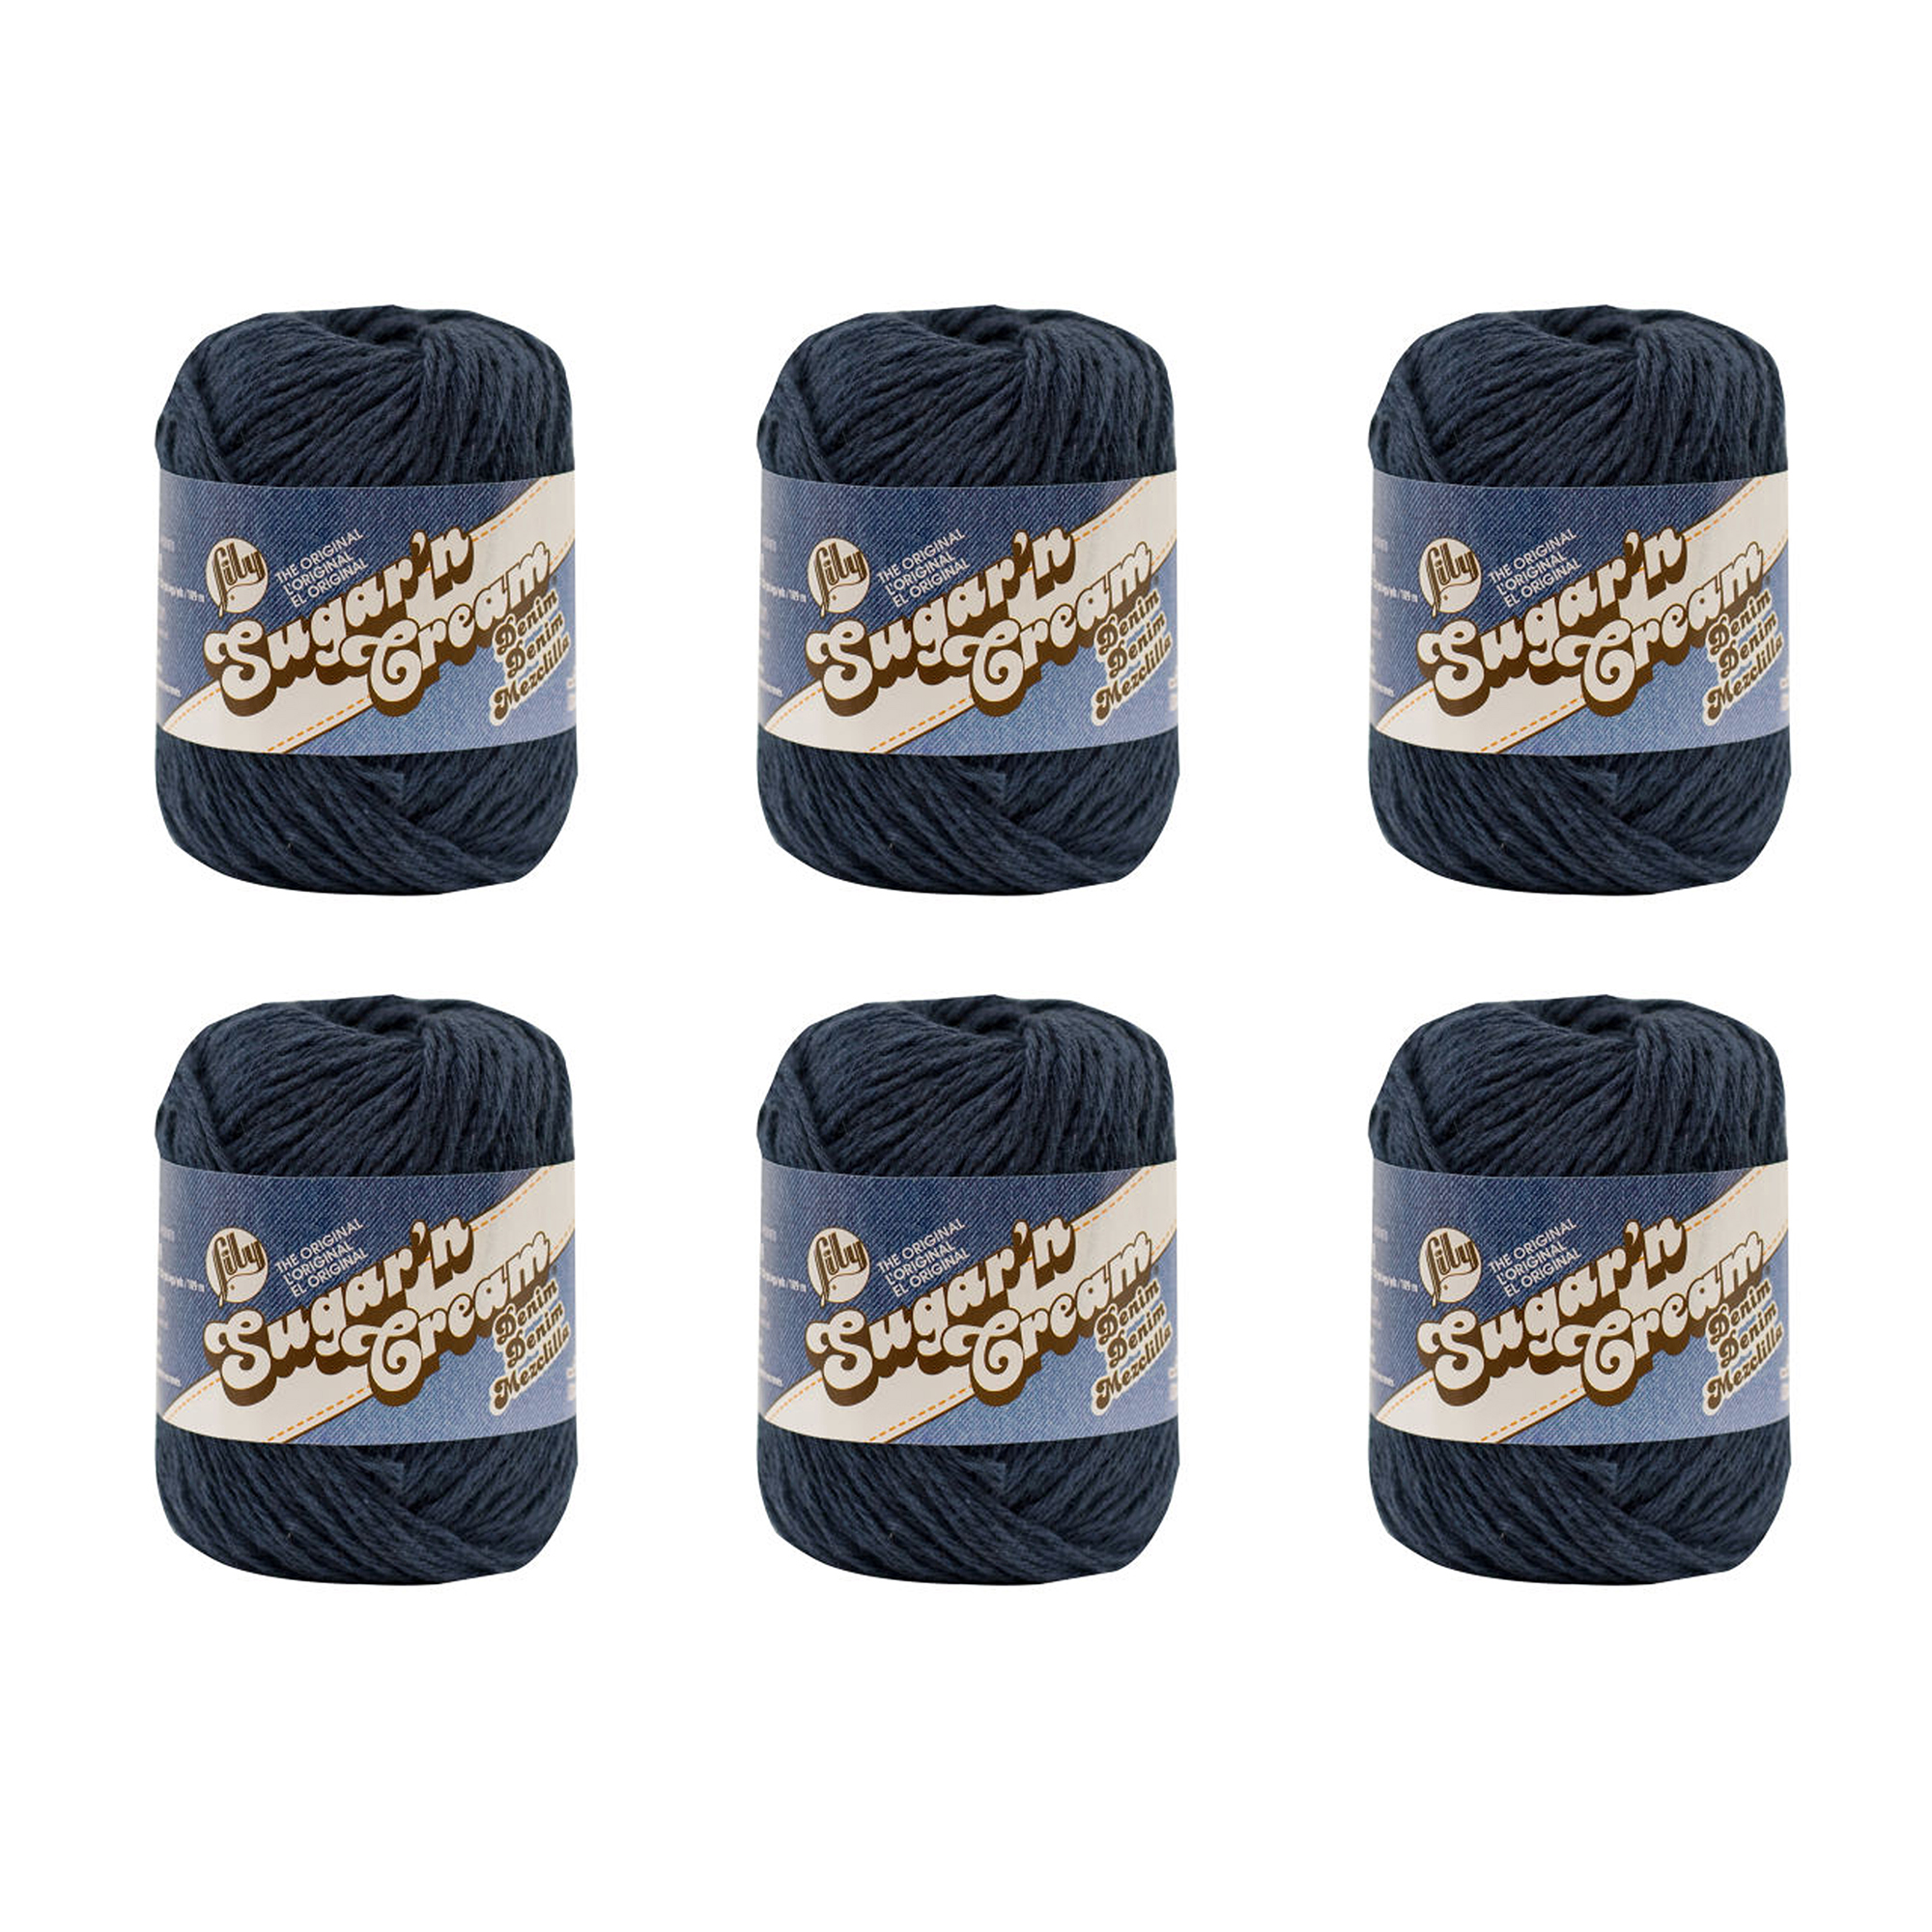 Lily Sugar'n Cream® The Original #4 Medium Cotton Yarn, Indigo 2.5oz/71g,  120 Yards (6 Pack)